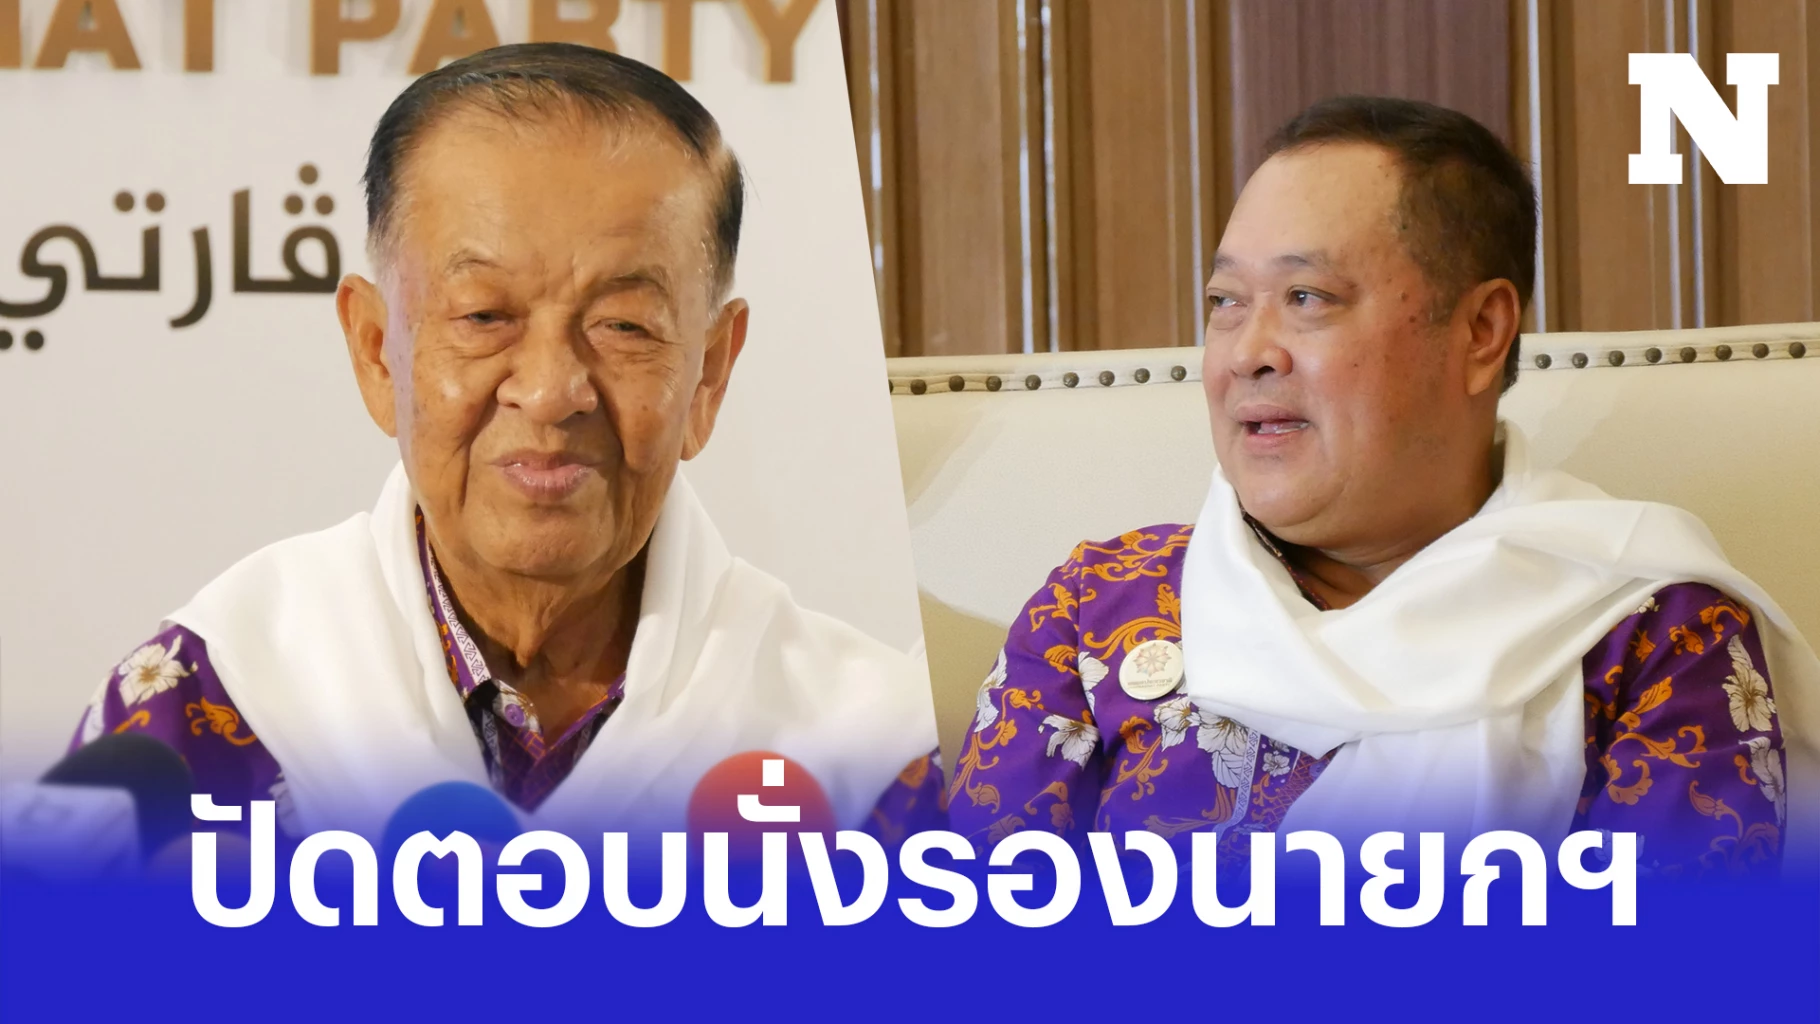 ประธานสภาผู้แทนราษฎรไทย